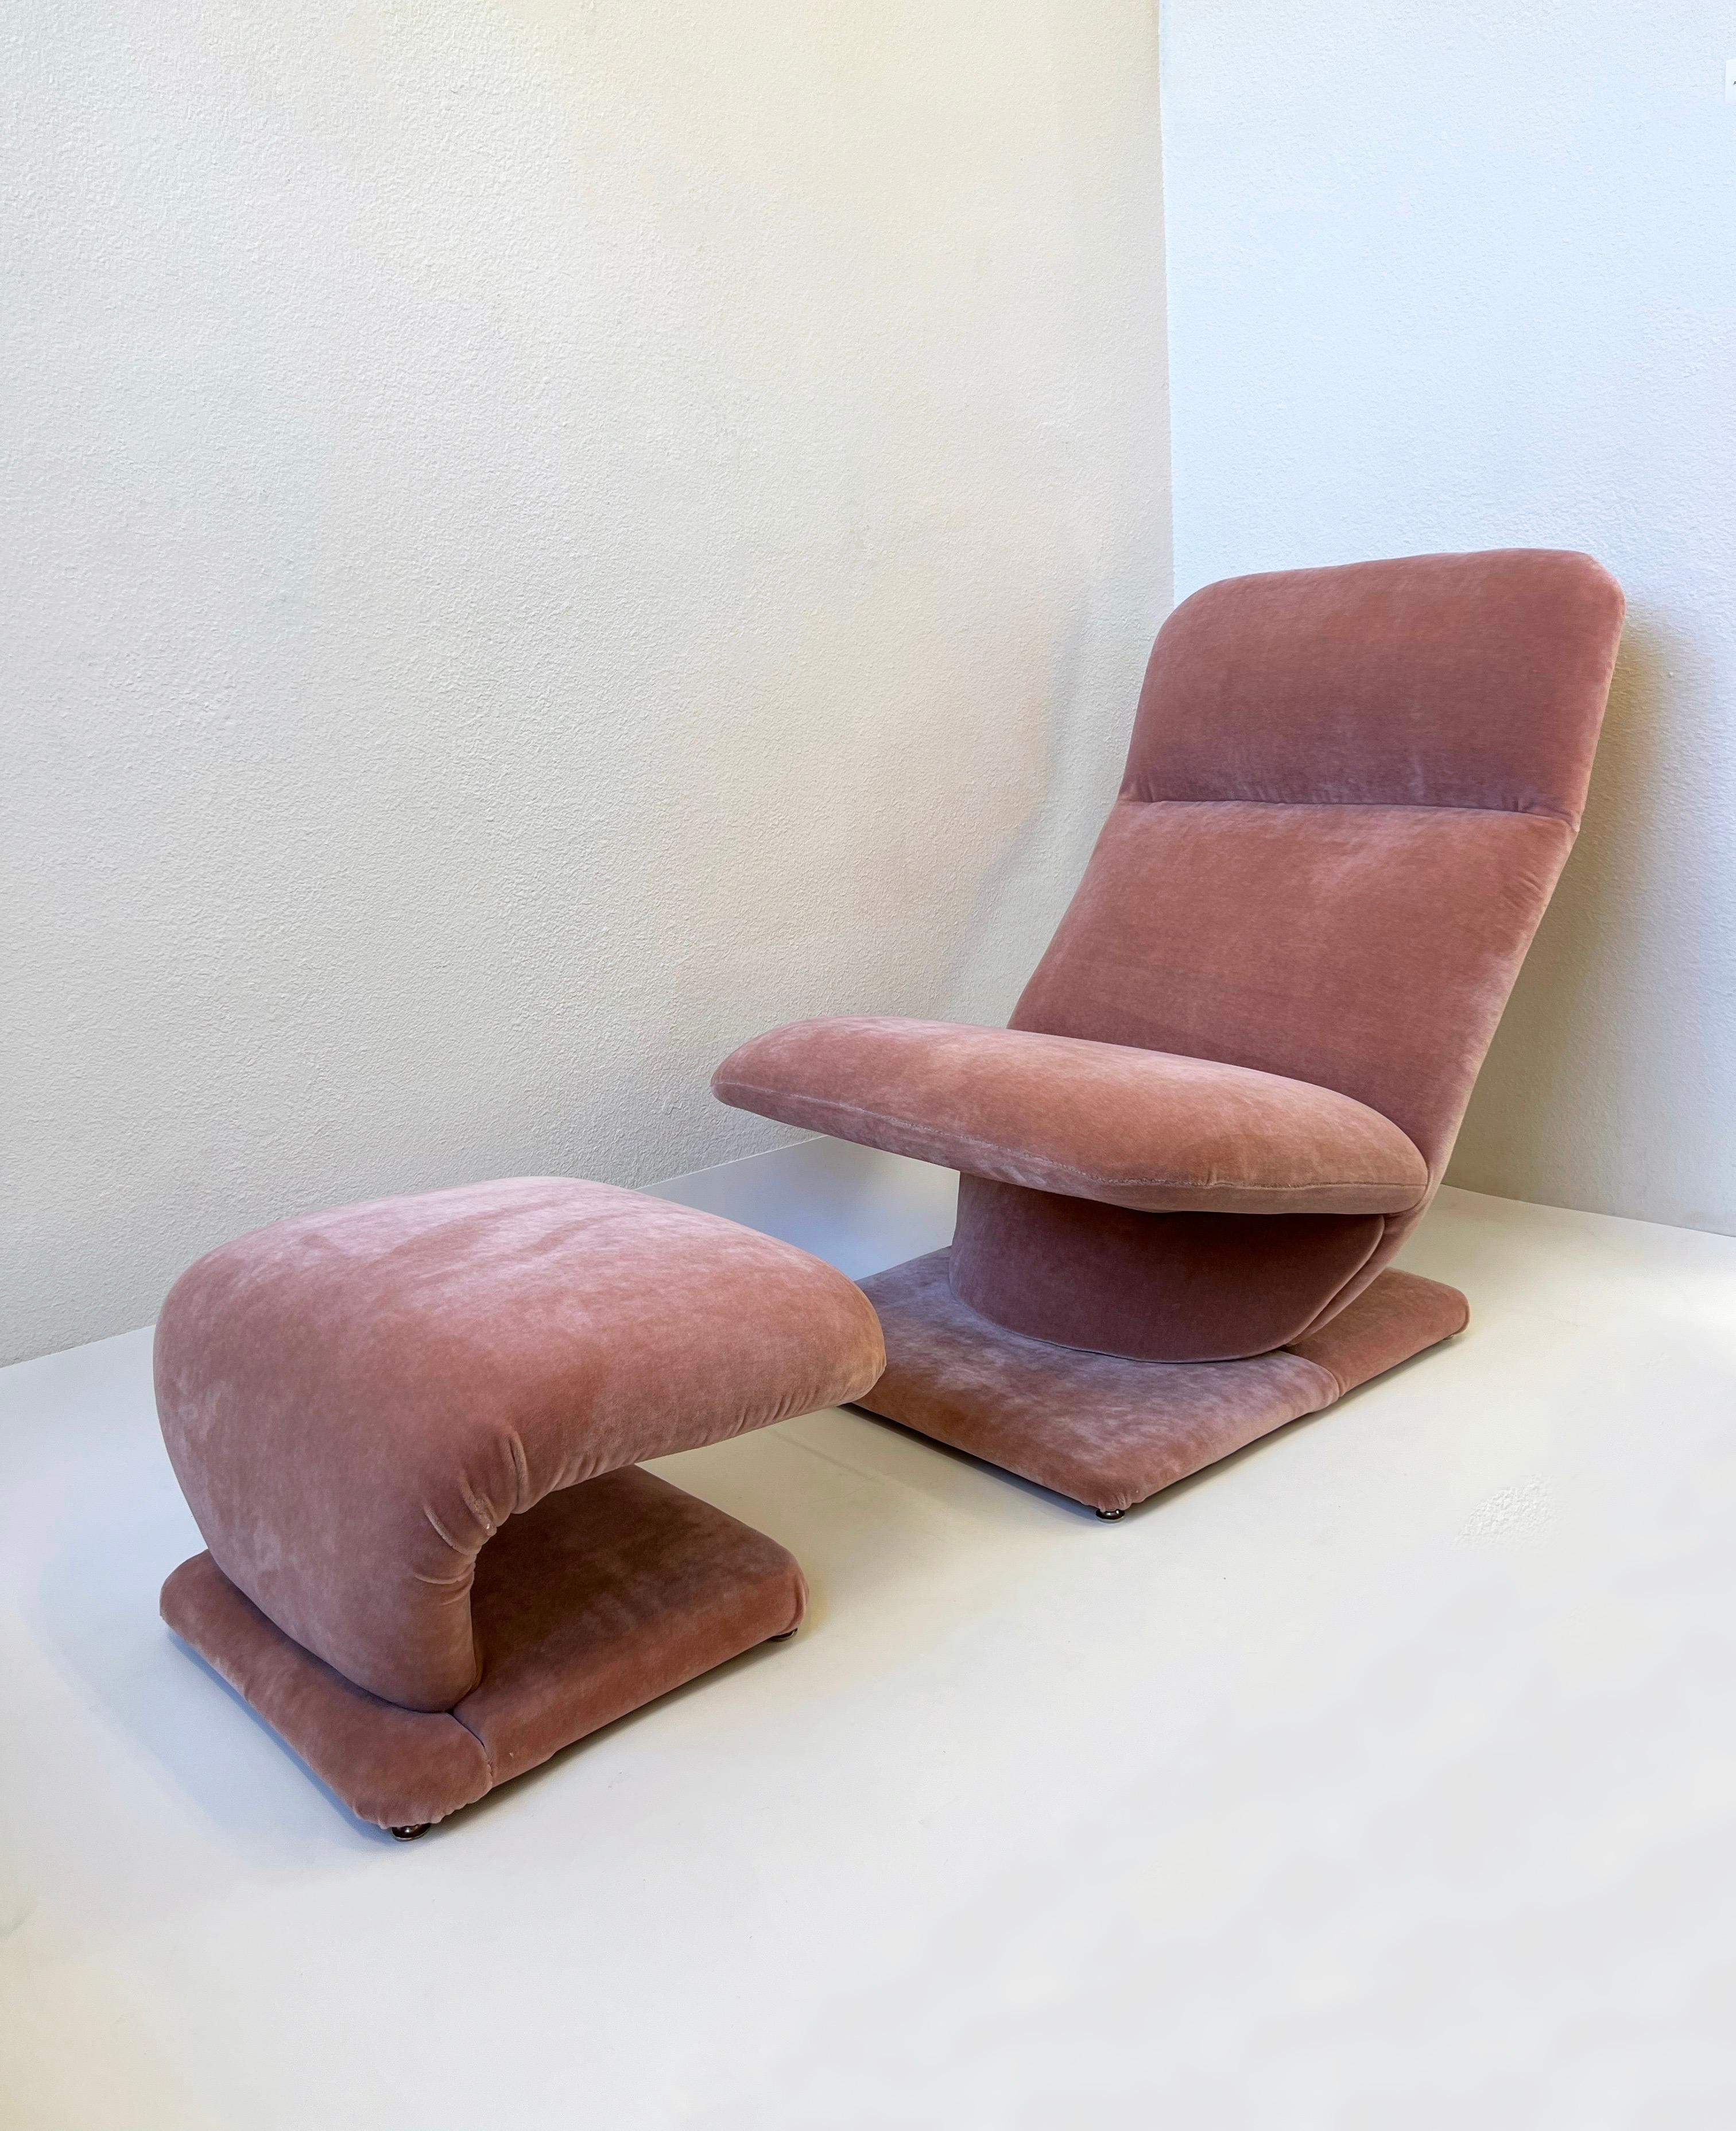 Une magnifique chaise longue et un ottoman en mohair rose des années 1980 par Design Institute of America.
La chaise est superbe, elle vient d'être récupérée.
Conserve le label DIA. 

Mesures : 
chaise- 36